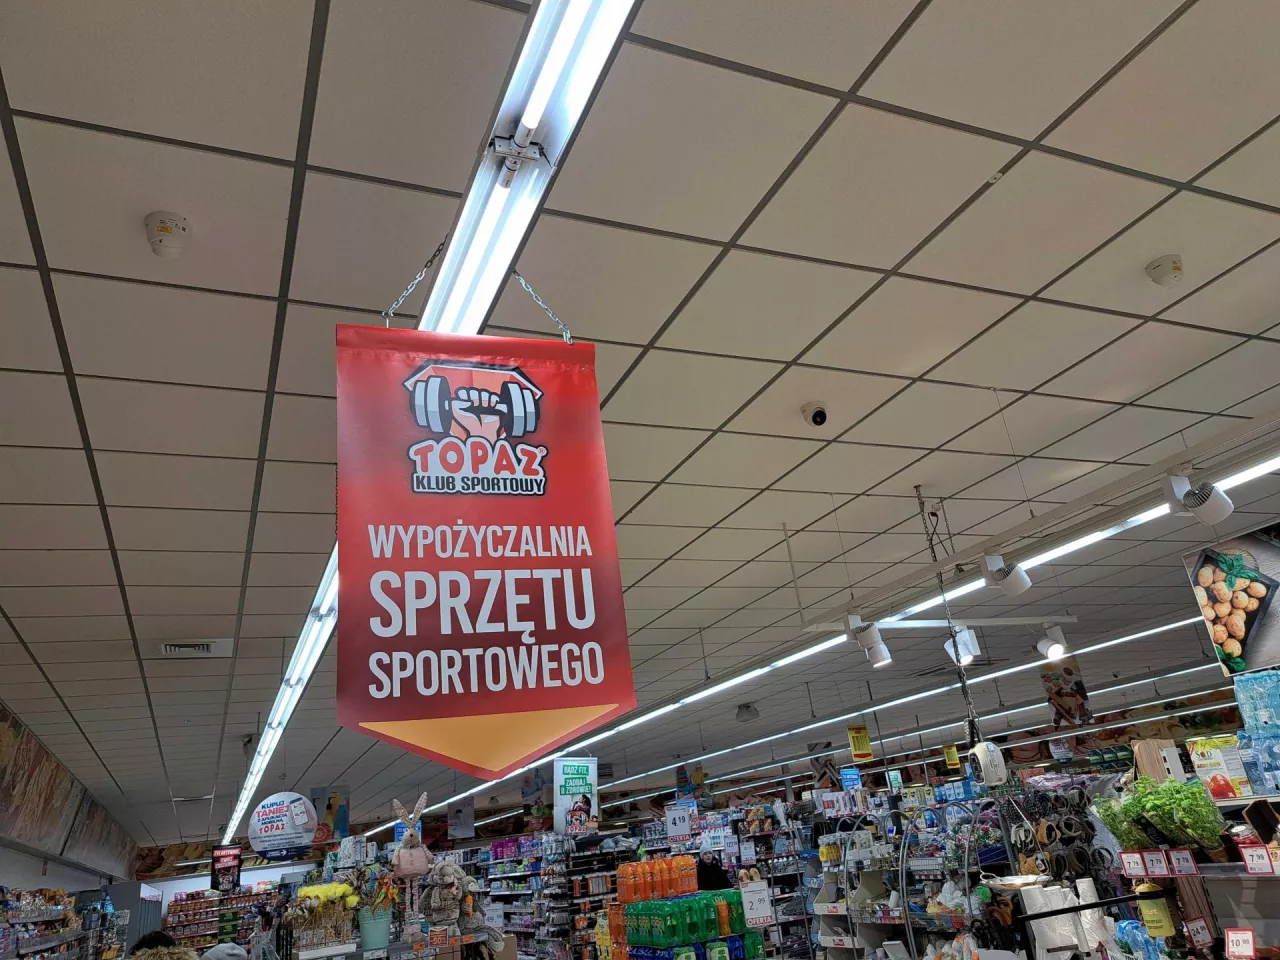 &lt;p&gt;Wypożyczalnia sprzętu sportowego w sklepie sieci Topaz (fot. wiadomoscihandlowe.pl)&lt;/p&gt;